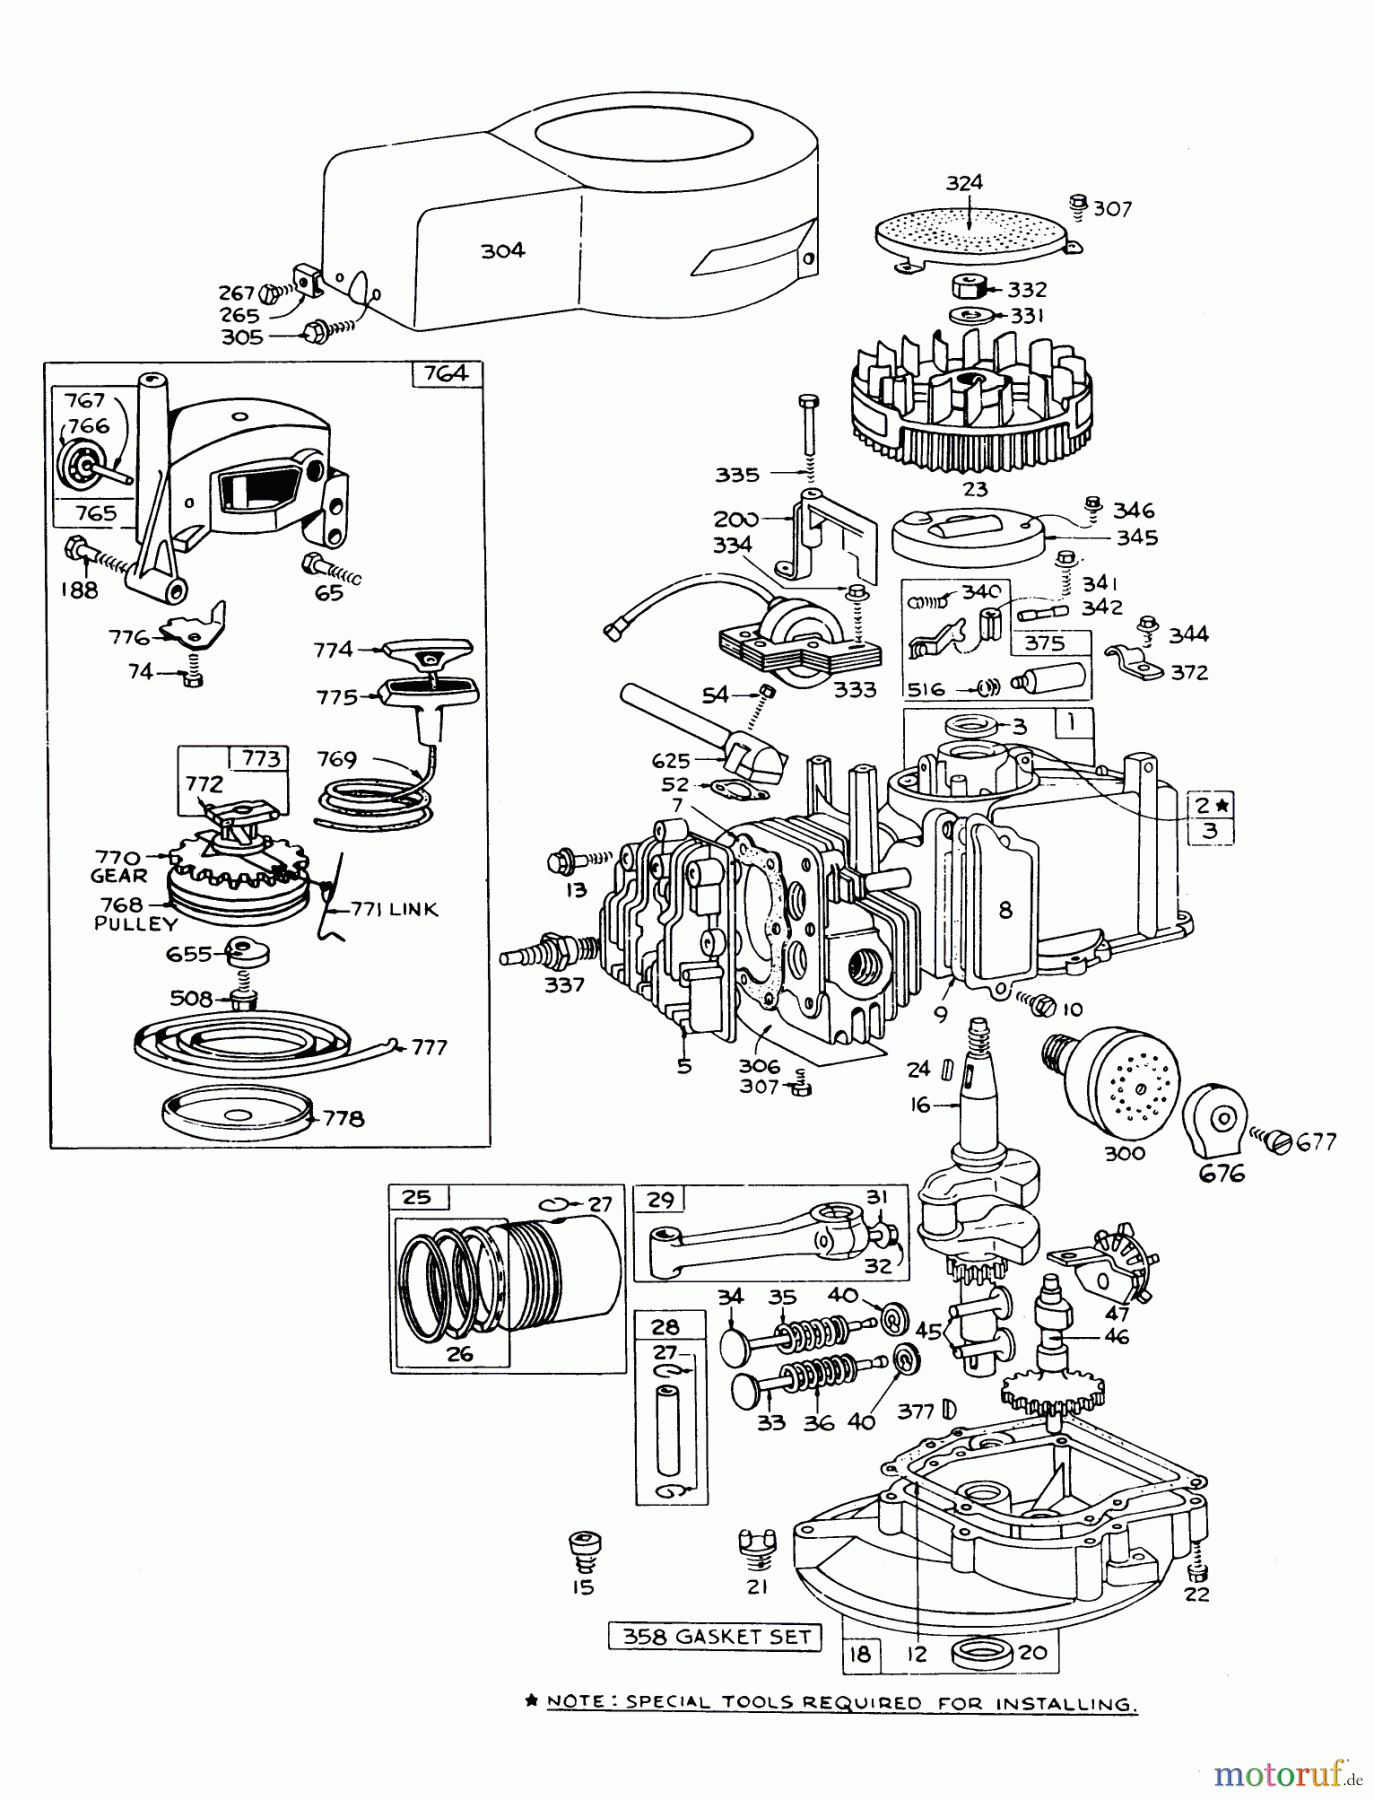  Toro Neu Mowers, Walk-Behind Seite 1 16113 - Toro Whirlwind II Lawnmower, 1977 (7000001-7999999) ENGINE BRIGGS & STRATTON MODEL 92508-0954-01 FOR 19